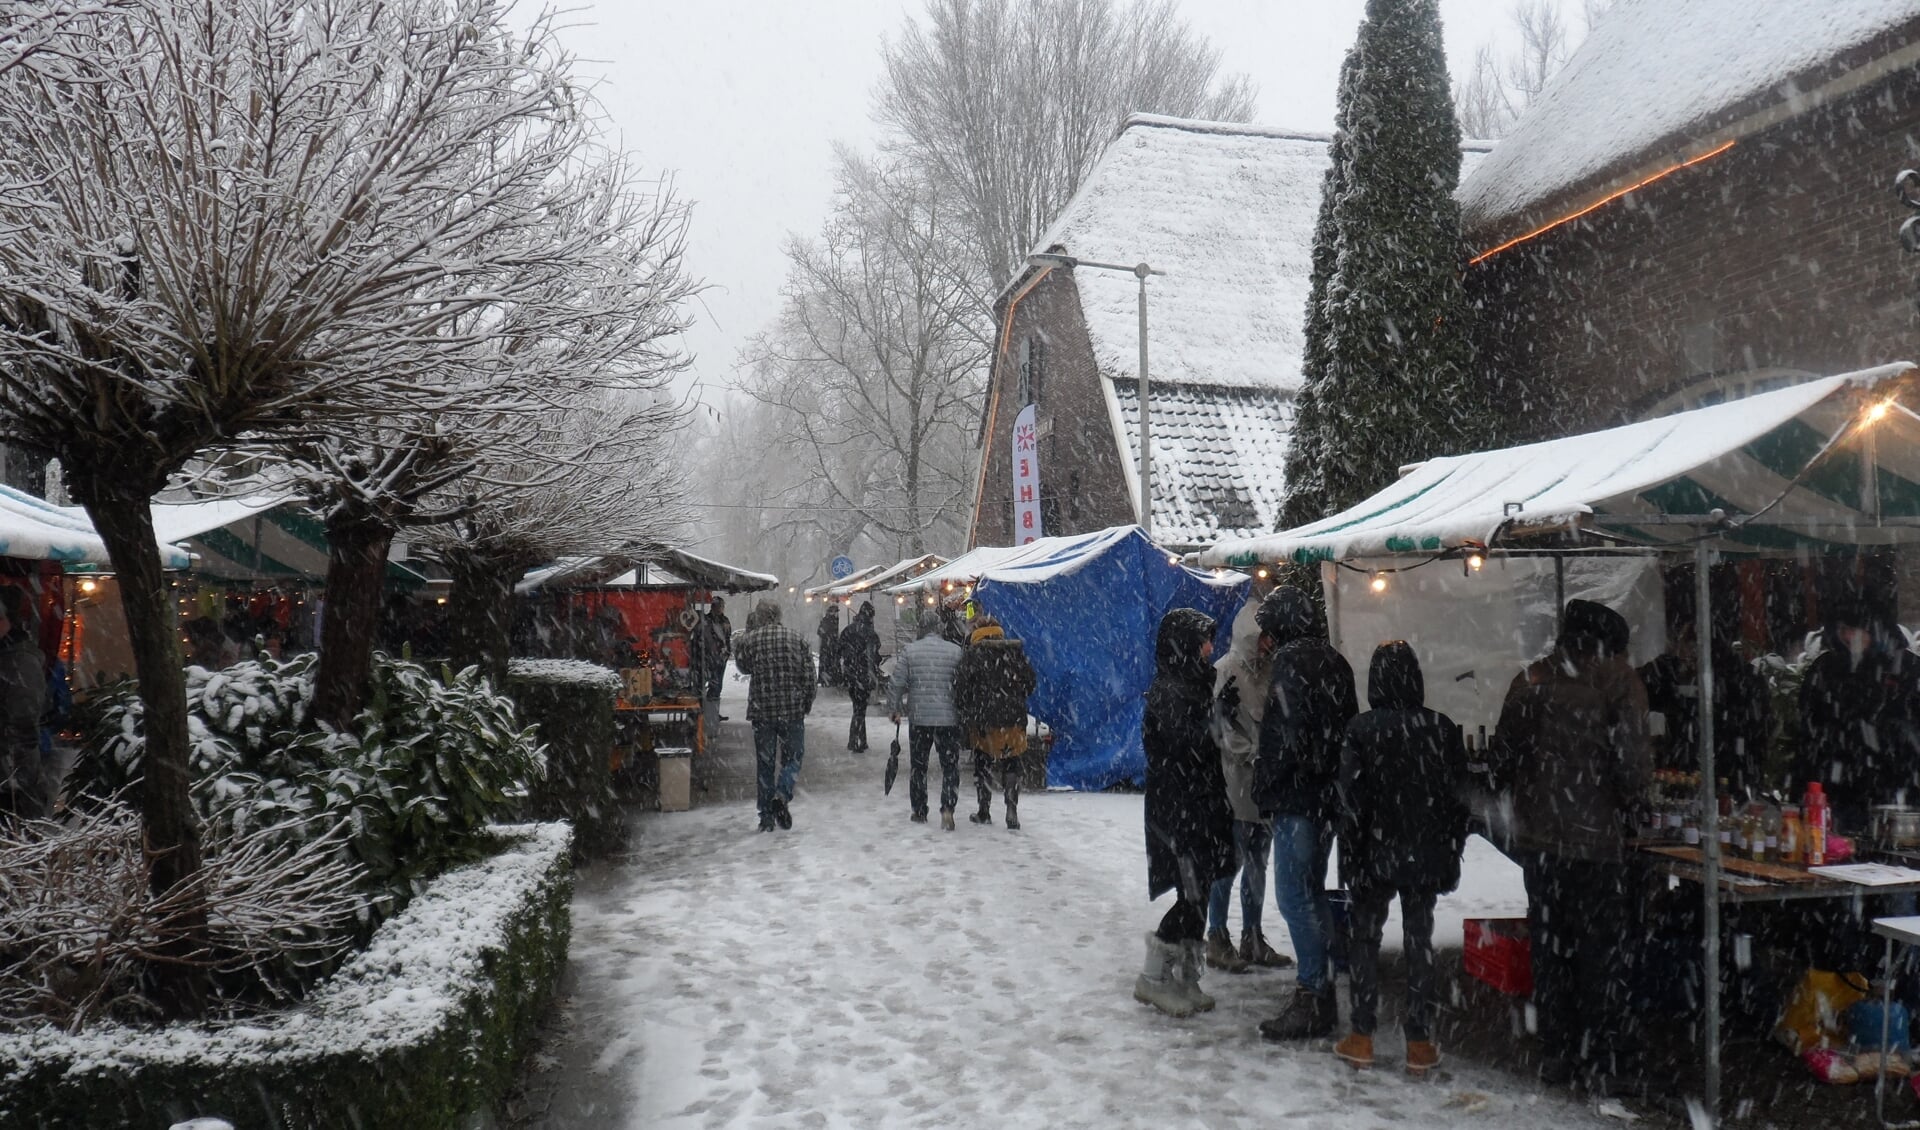 Kerstmarkt met sneeuw. (foto: Niek van Veen-Aerts)